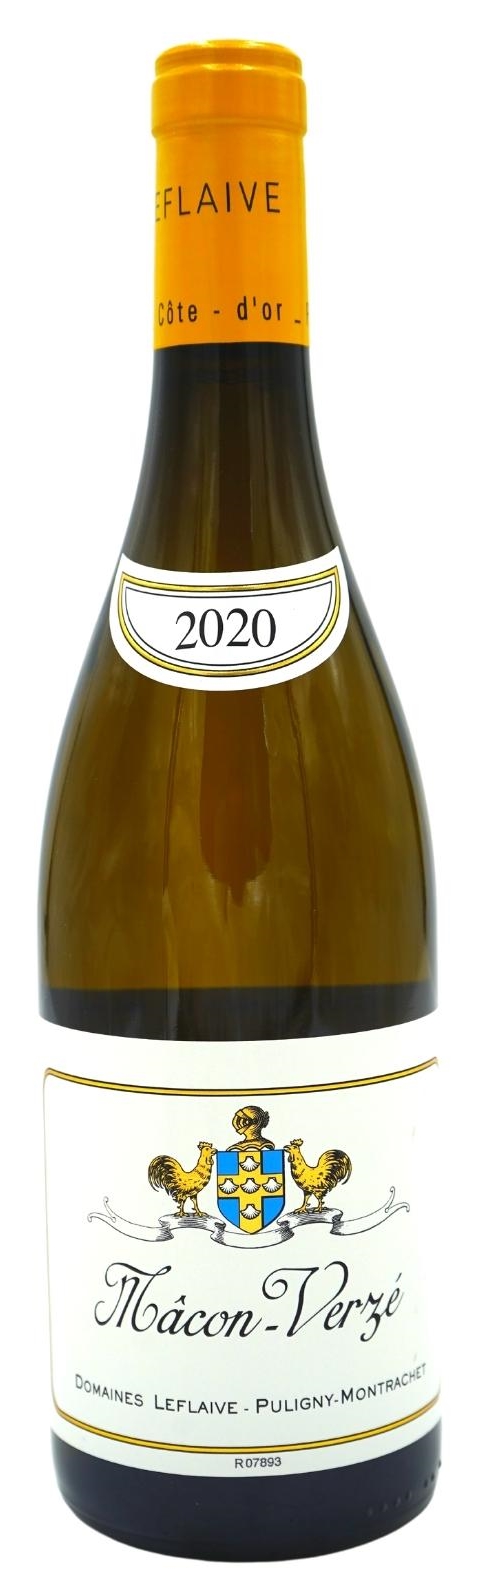 2020 Mâcon-Verzé